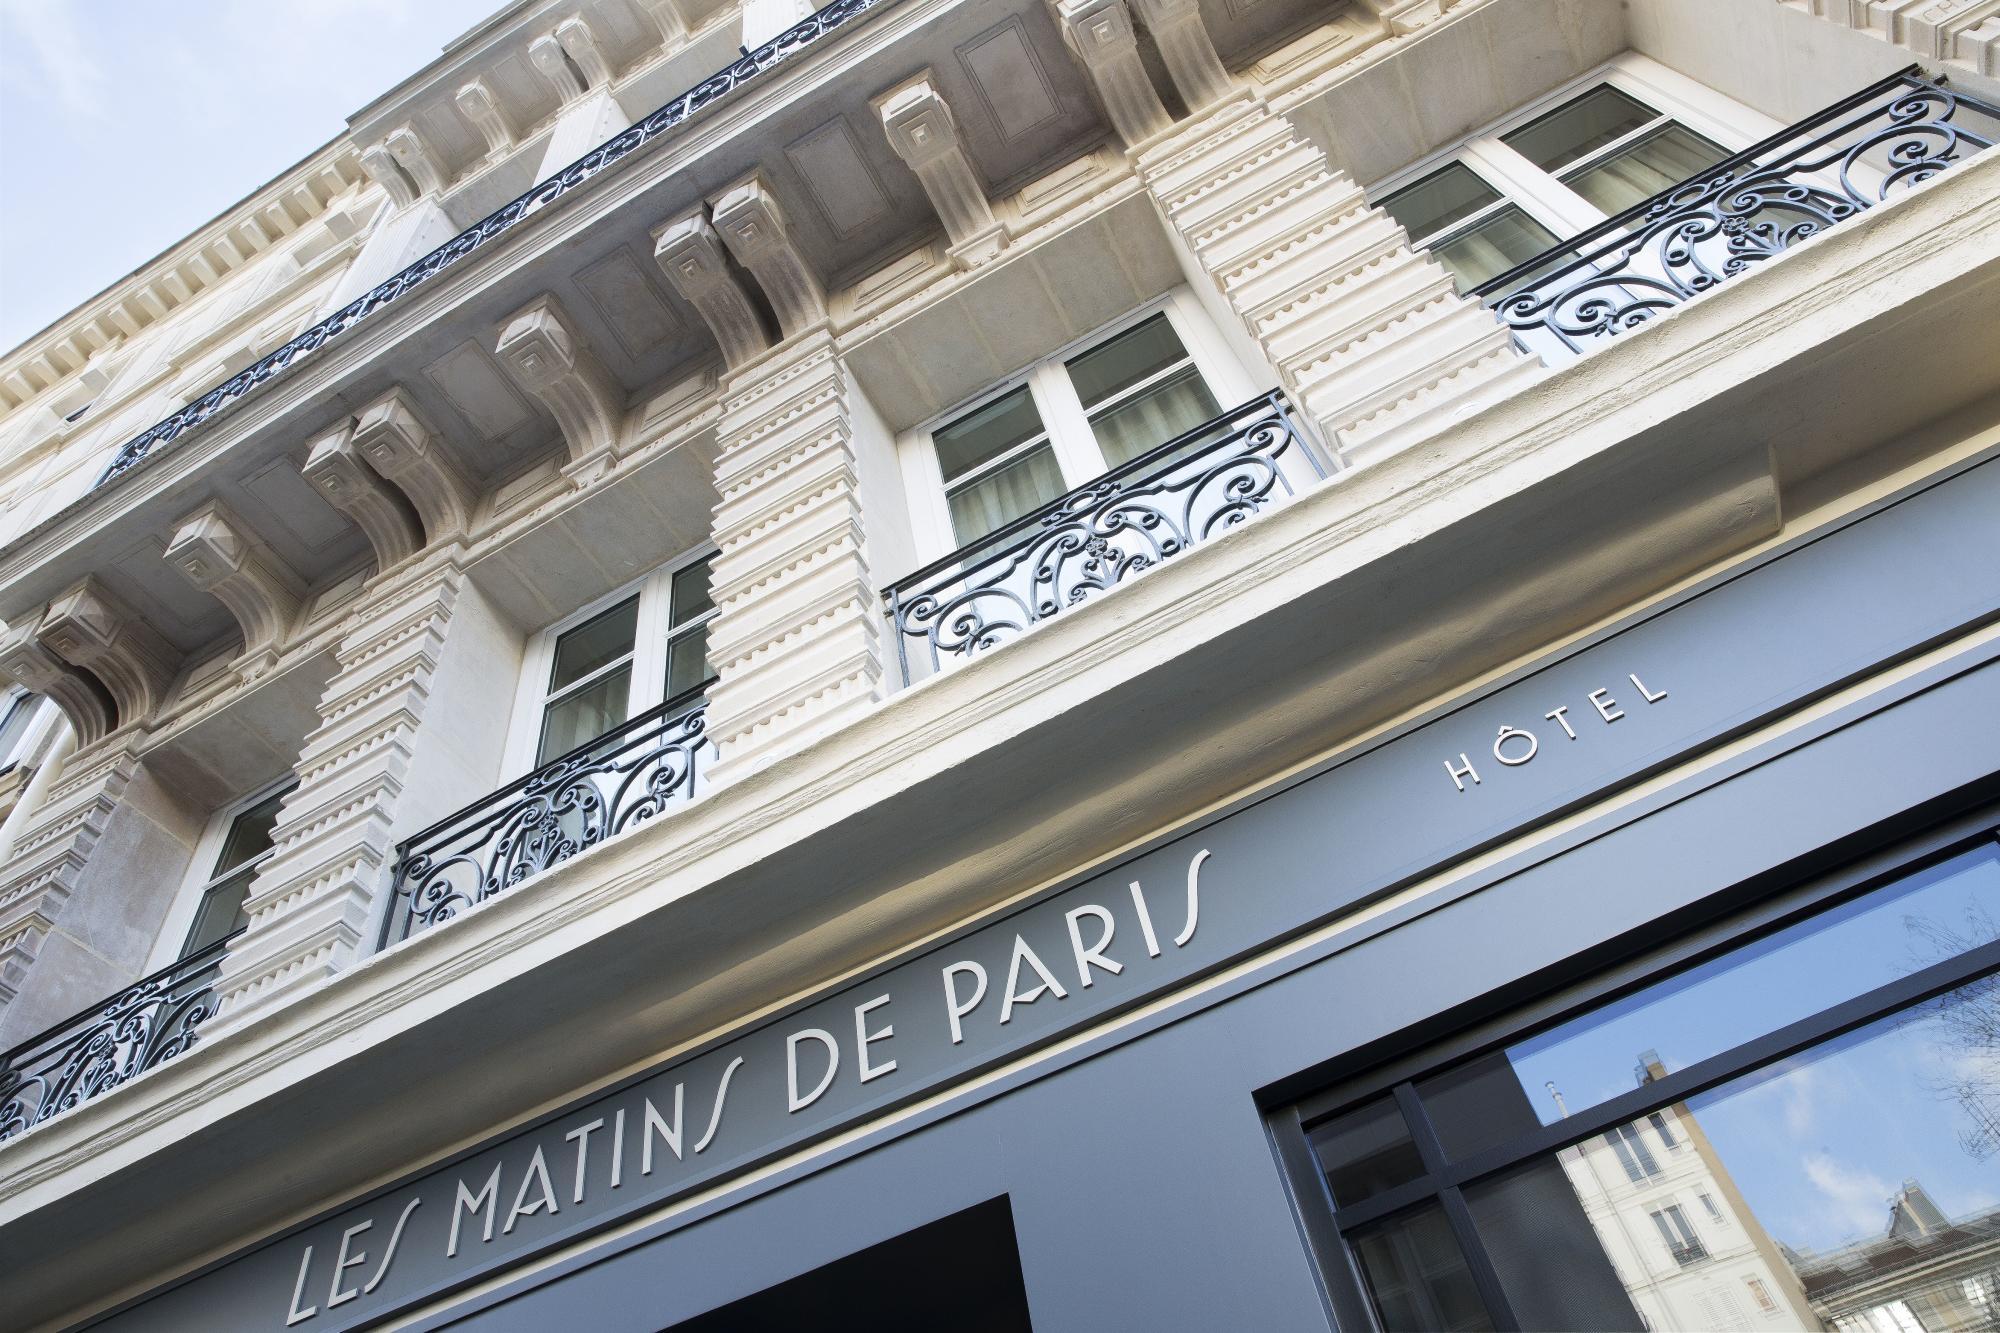 Hôtel Les Matins de Paris Façade